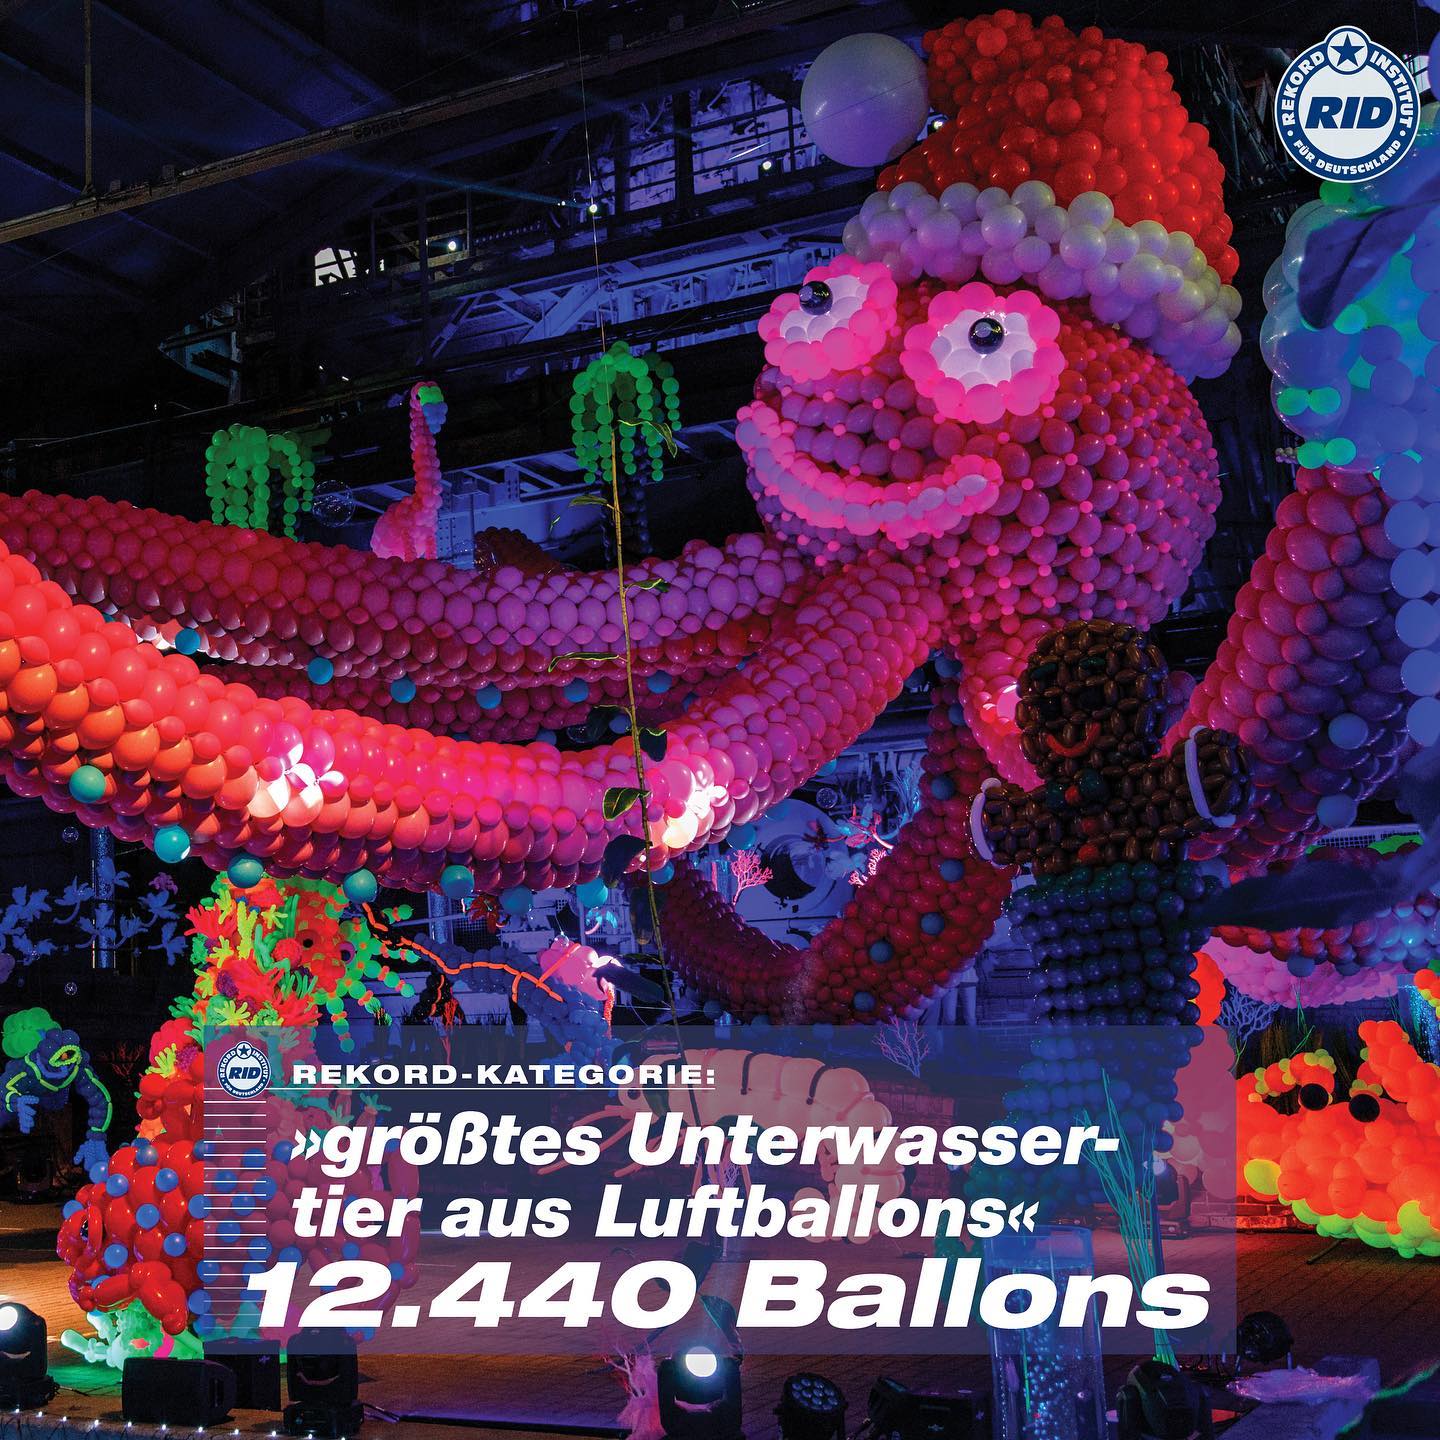 Mit 12.440 verbauten Luftballons knackte @schauinslandreisen den Weltrekord für das »größte Unterwassertier aus Luftballons«. Andreas Rüttgers, Touristikleiter bei schauinsland-reisen und Bauherr der Skulptur, nahm stolz die Rekordurkunde entgegen. RID-Rekordrichter @olafkuchenbecker reiste eigens aus Hamburg an und zertifizierte die bunte Bestleistung noch an Ort und Stelle. 
Auf unserer Webseite könnt Ihr weitere tierische Weltrekorde finden. Klickt hierfür auf den Link in unserer Bio. Das RID wünscht allen Rekordfans ein tolles Wochenende! 
#rekordinstitutfürdeutschland #rekordinstitfuerdeutschland #buchderweltrekorde #RID #olafkuchenbecker #kuchenbecker #ridrekordrichter #weltrekord #rekord #bestleistung #hamburg #ridrekordurkunde #rekordurkunde #ridweltrekord #krake #krakentier #luftballons #luftballons🎈 #oktopus #octopus #kids #art #schauinslandreisen #schauinsland #bunt #augen #eyes #balloon #balloonart #balloonstylist